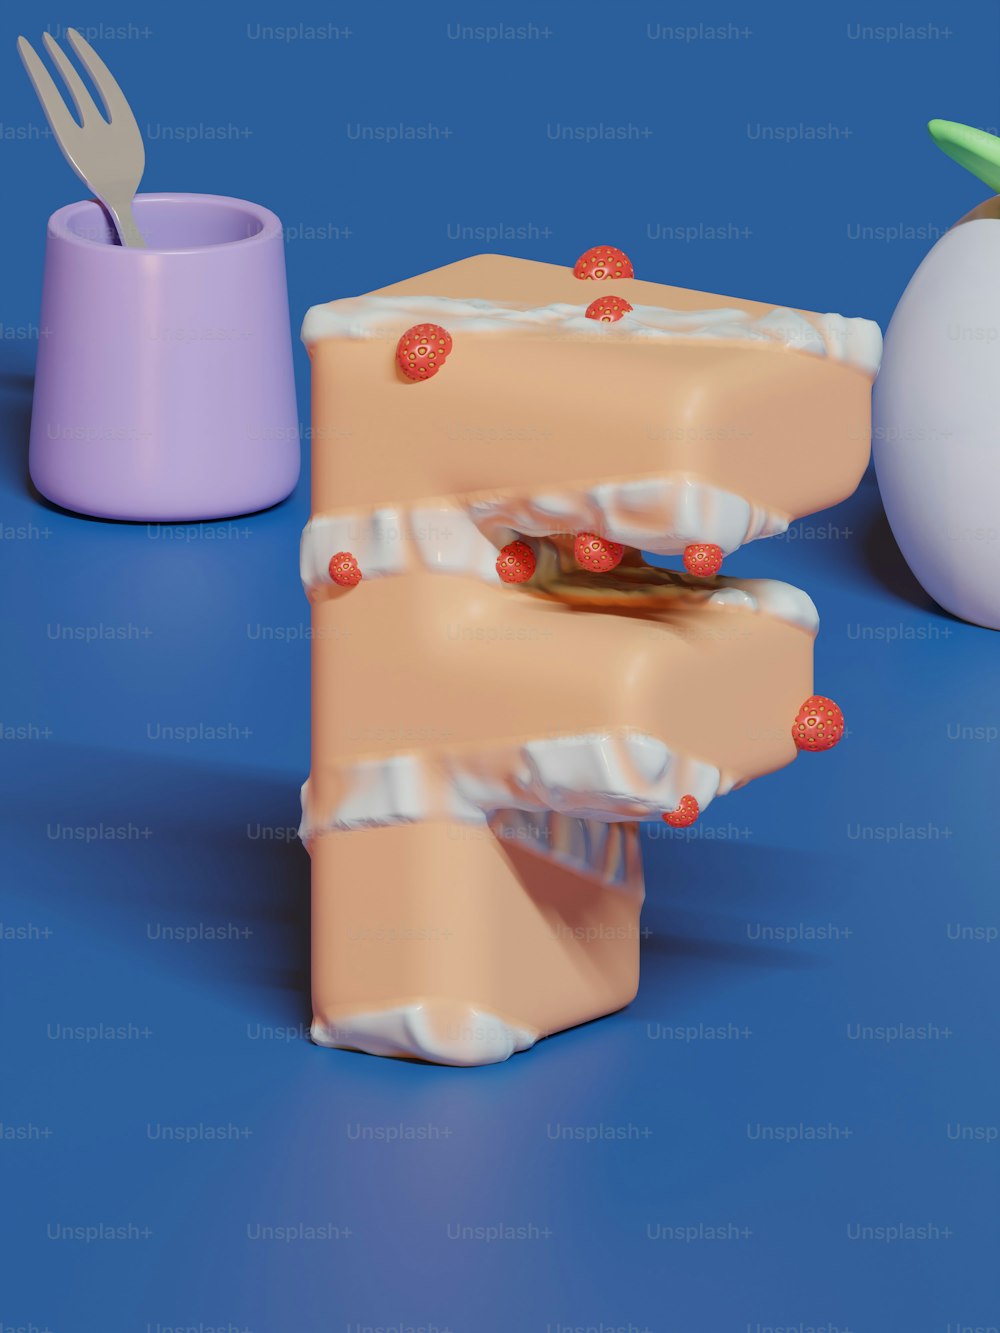 Un modello 3D di un pezzo di torta con una forchetta che sporge da esso